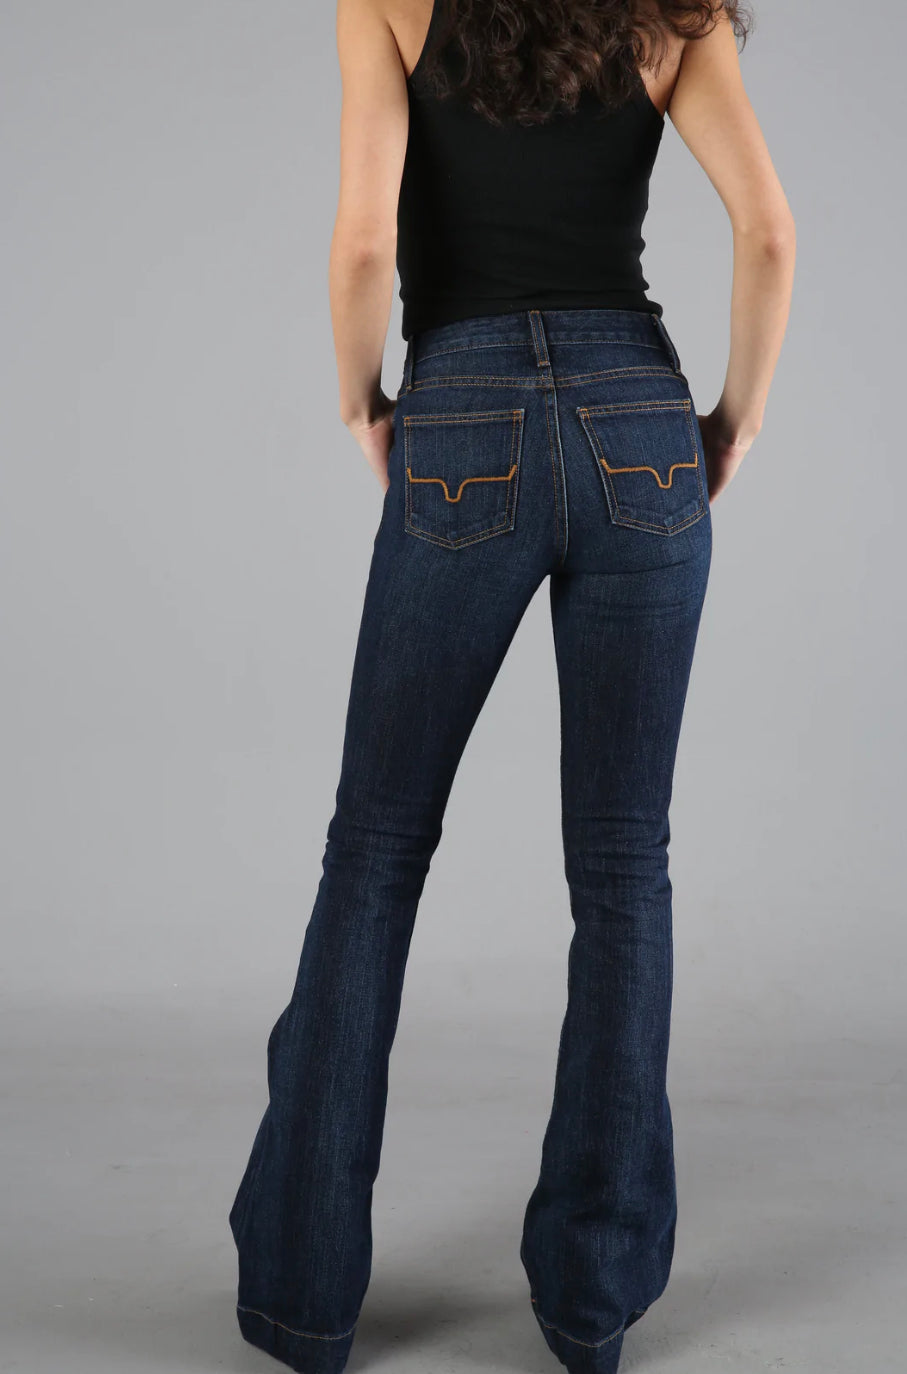 Kimes Ranch Jeans - Jennifer